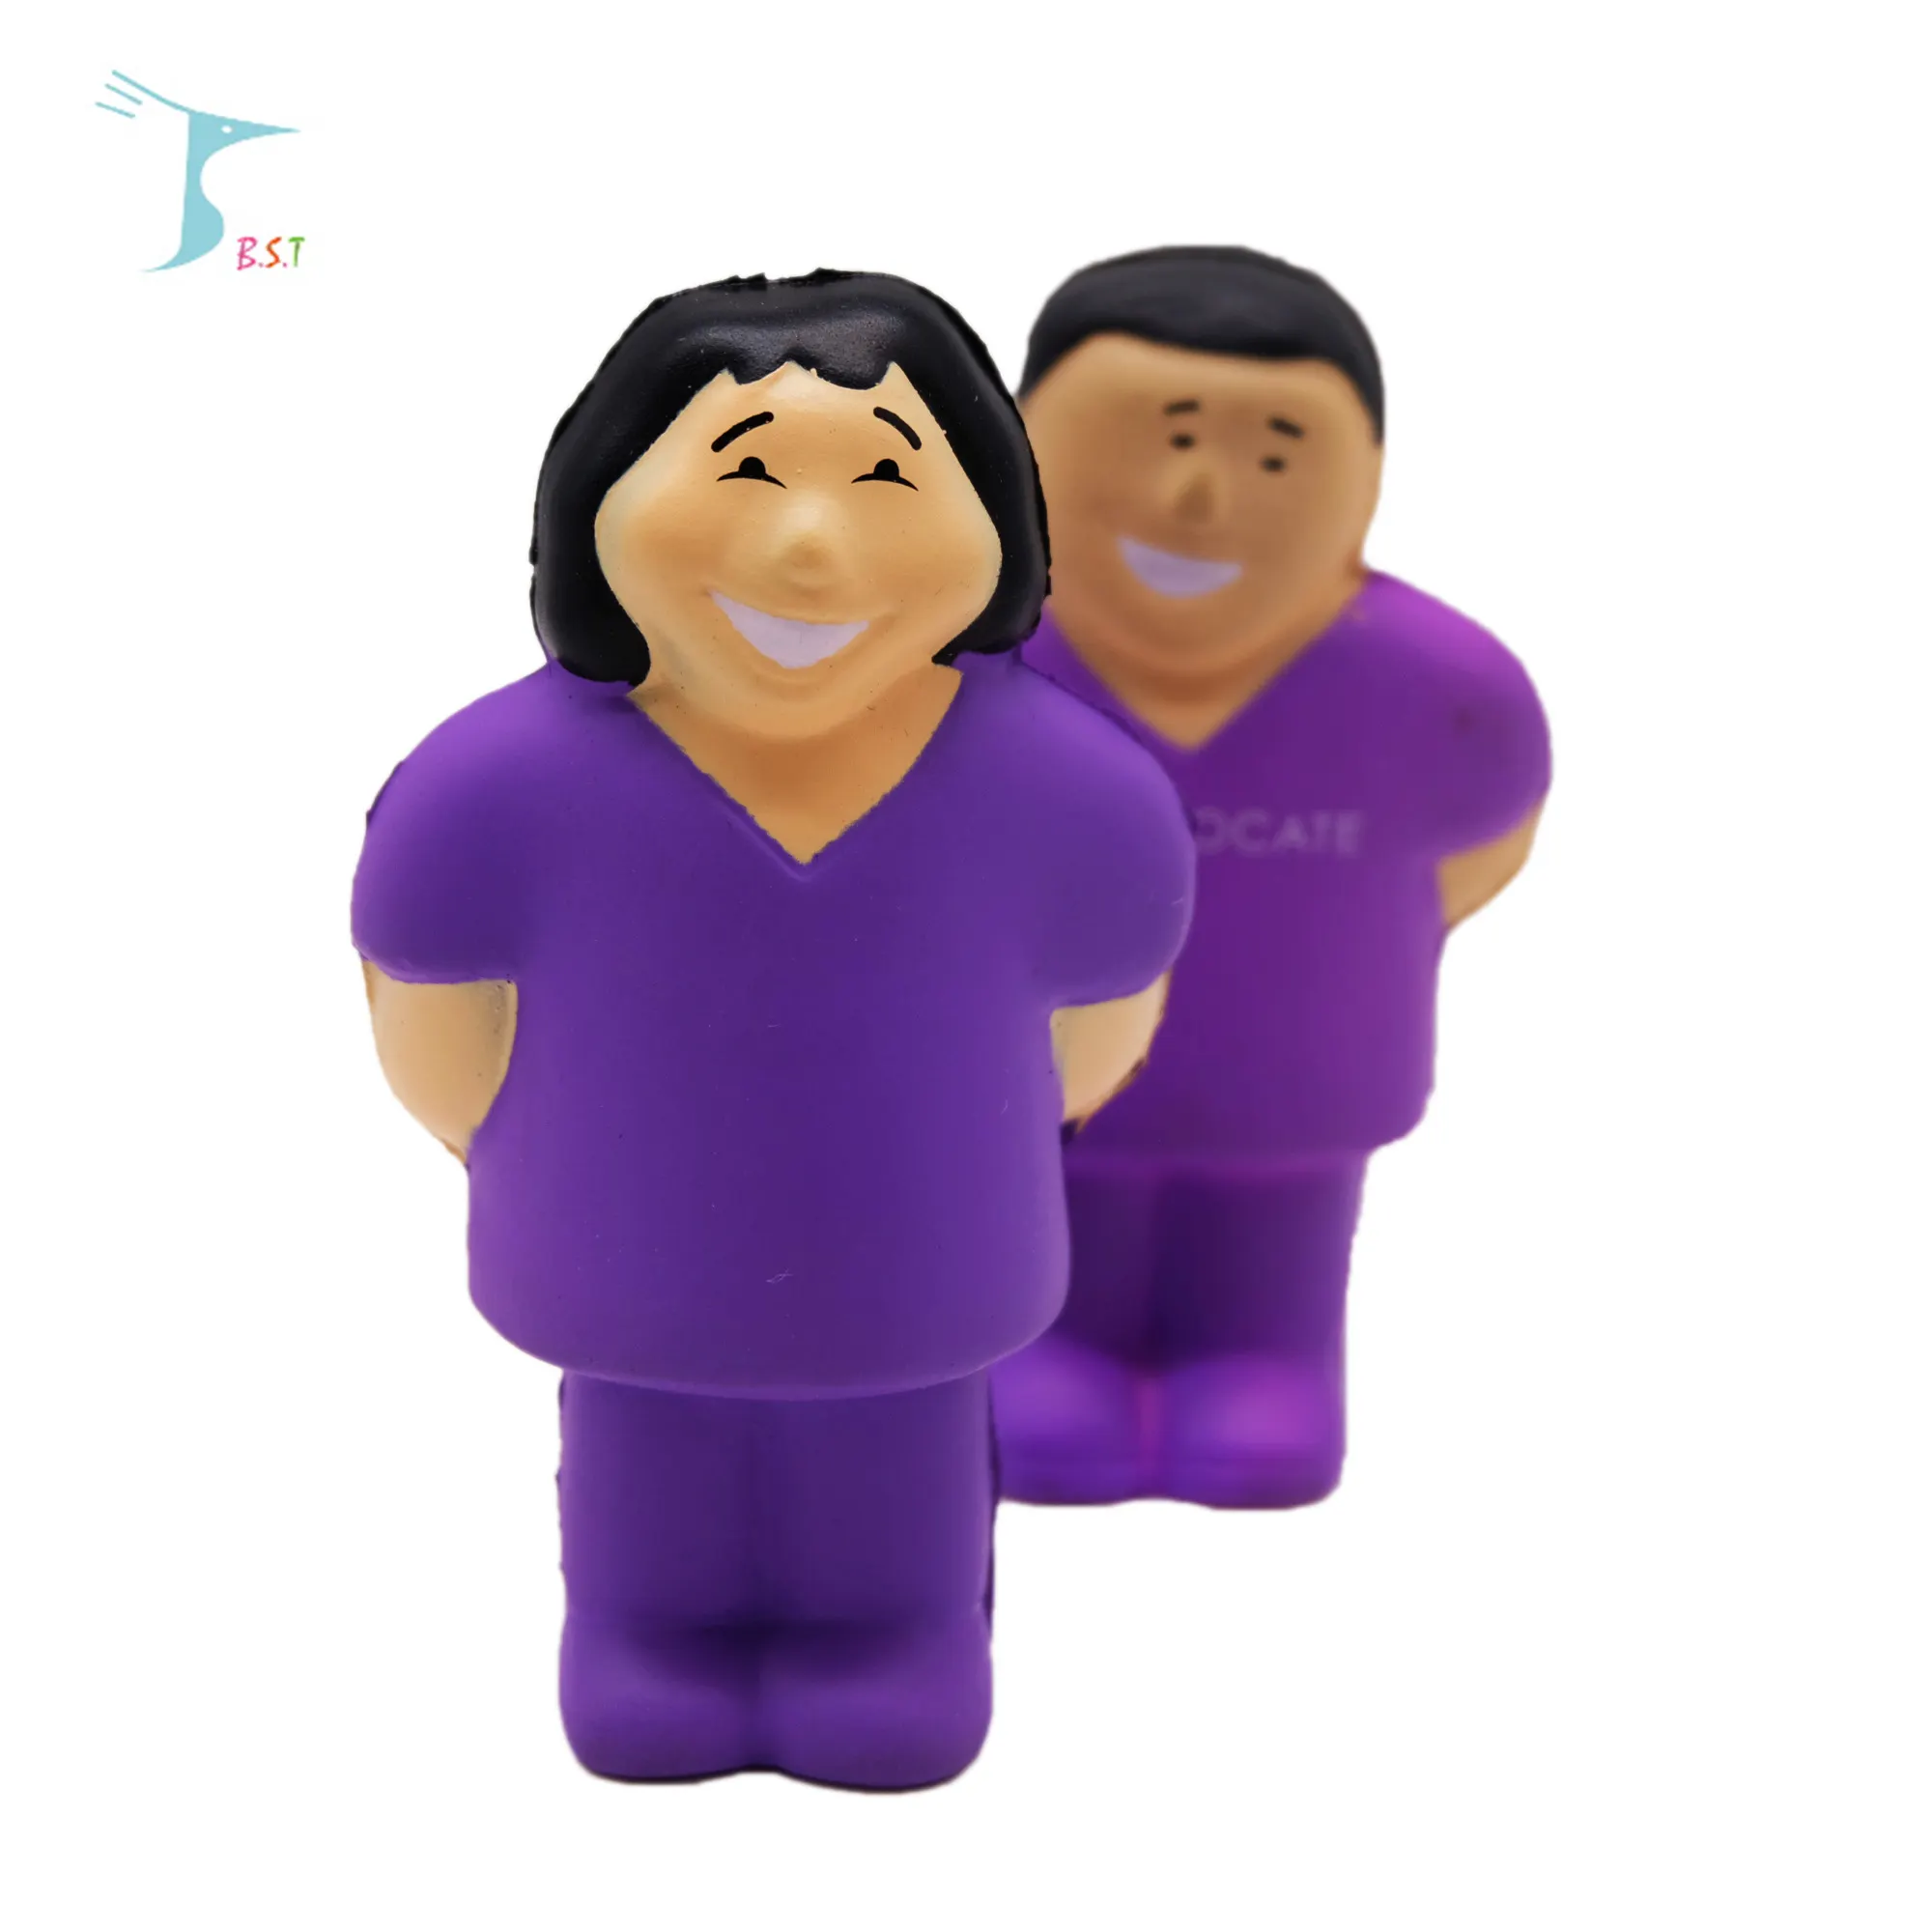 Squeeze pu foam stress female& male nurse toy /Anti-stress Pu foam female& male nurse shape character toy